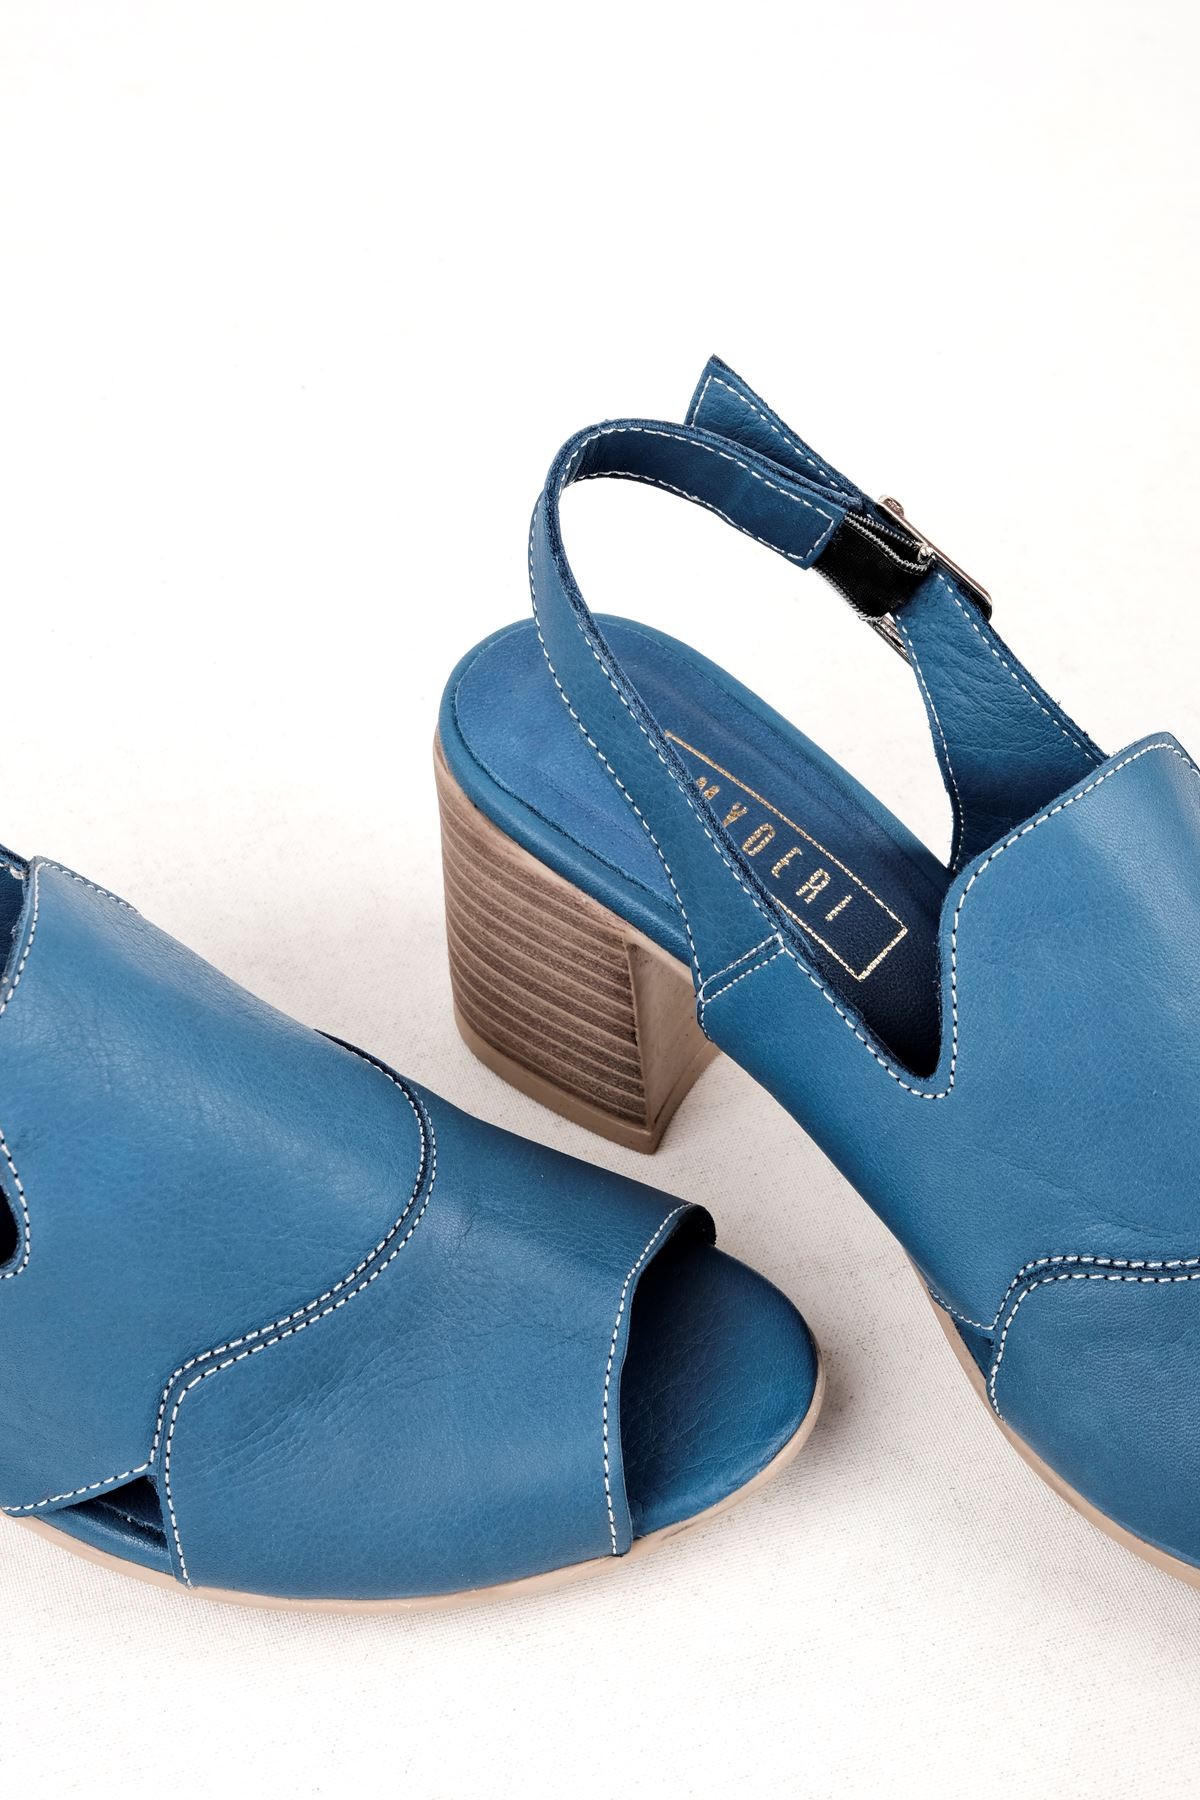 Andry Kadın Hakiki Deri Arkası Açık Topuklu Sandalet-B3129 - Mavi